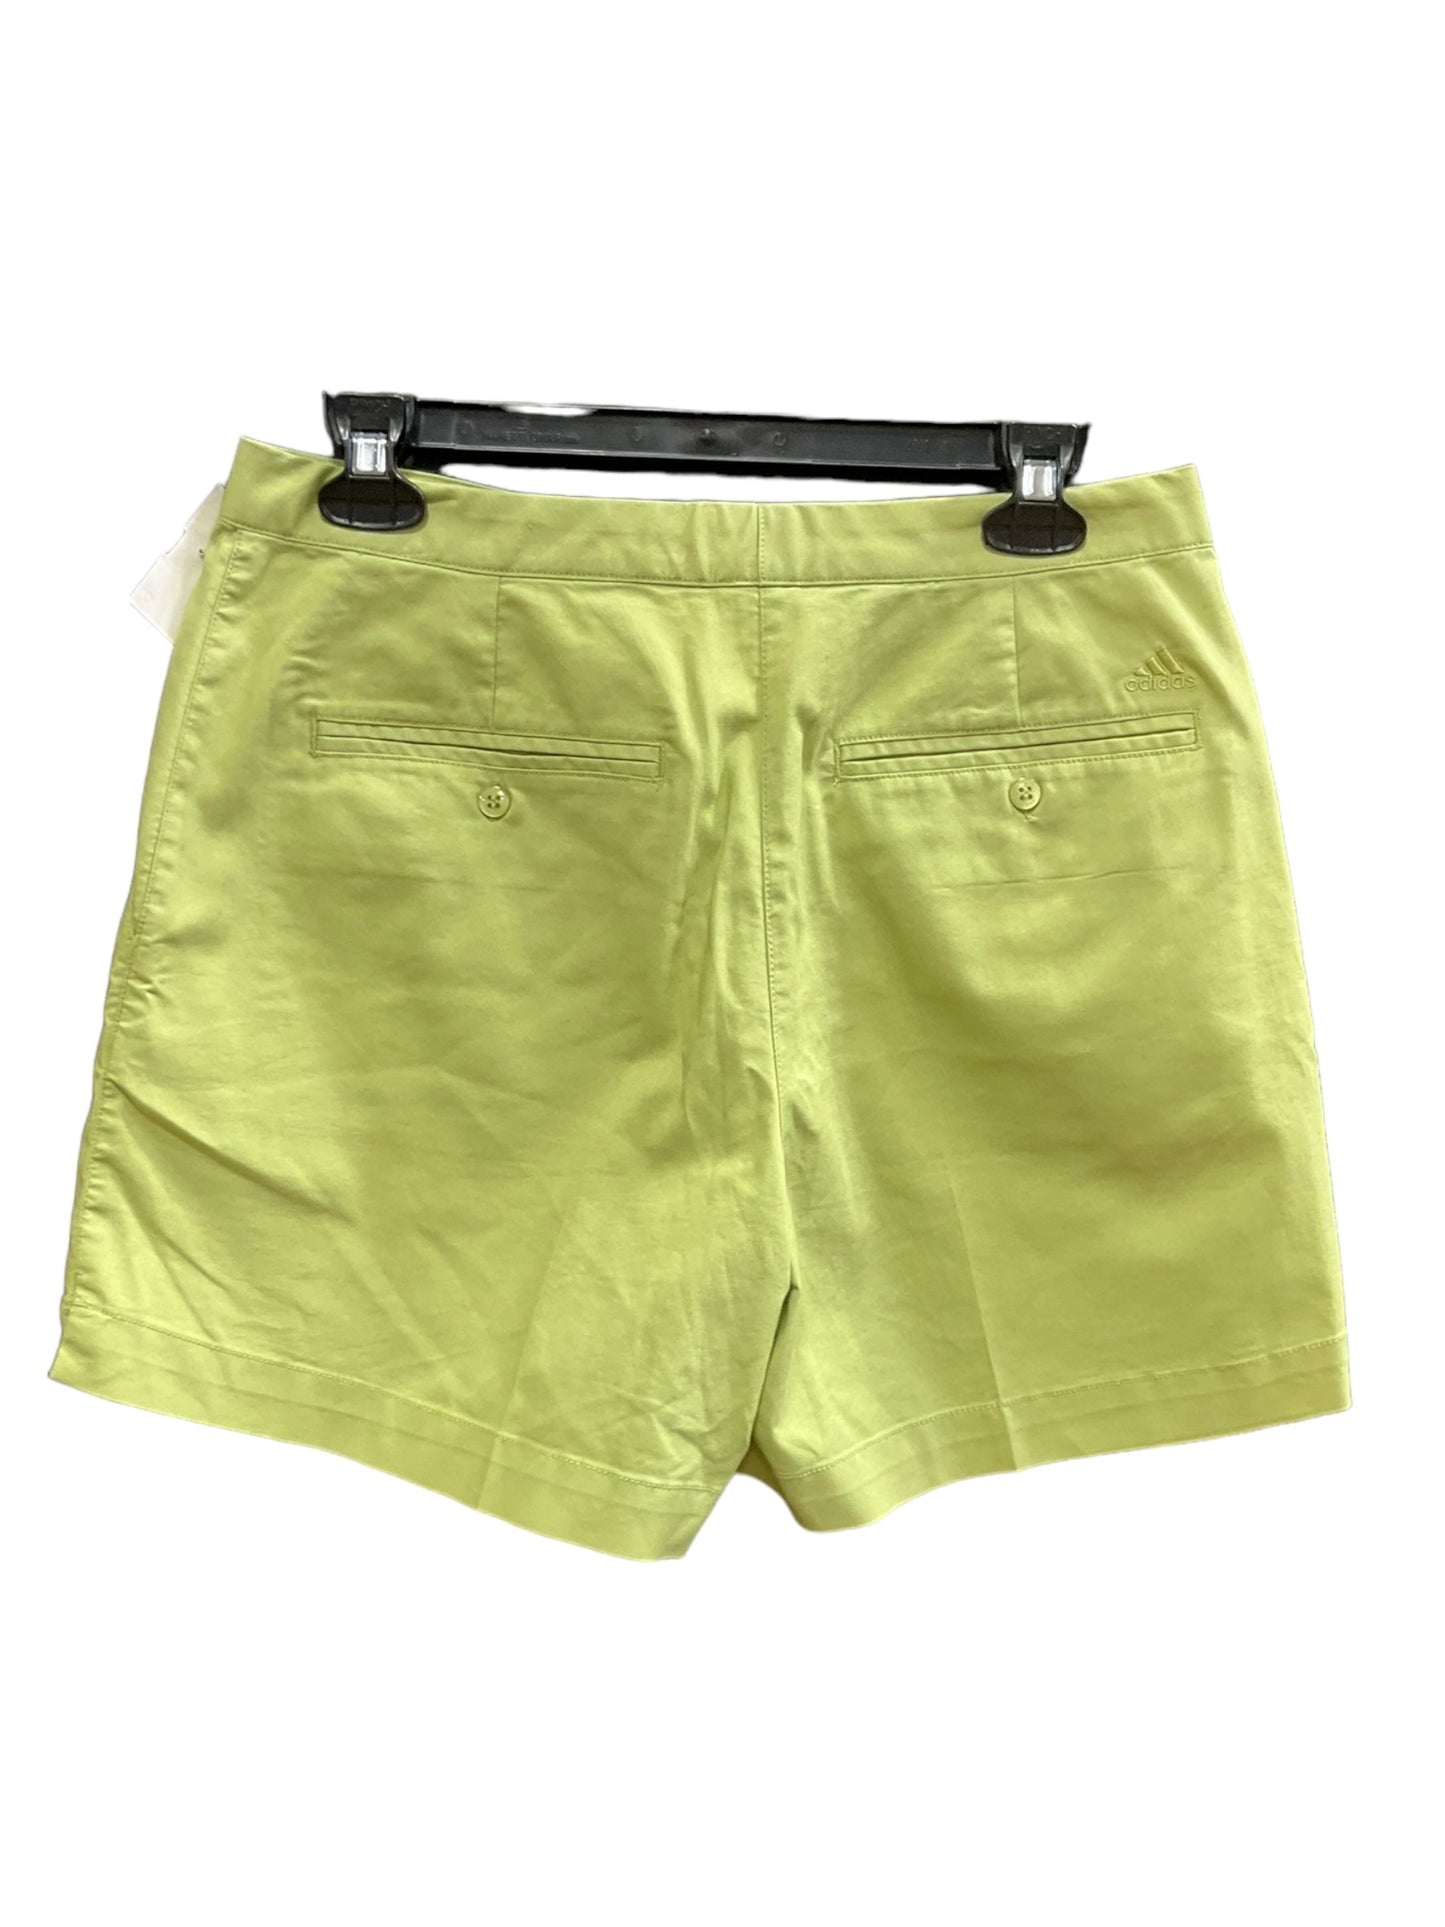 Green Shorts Adidas, Size 8